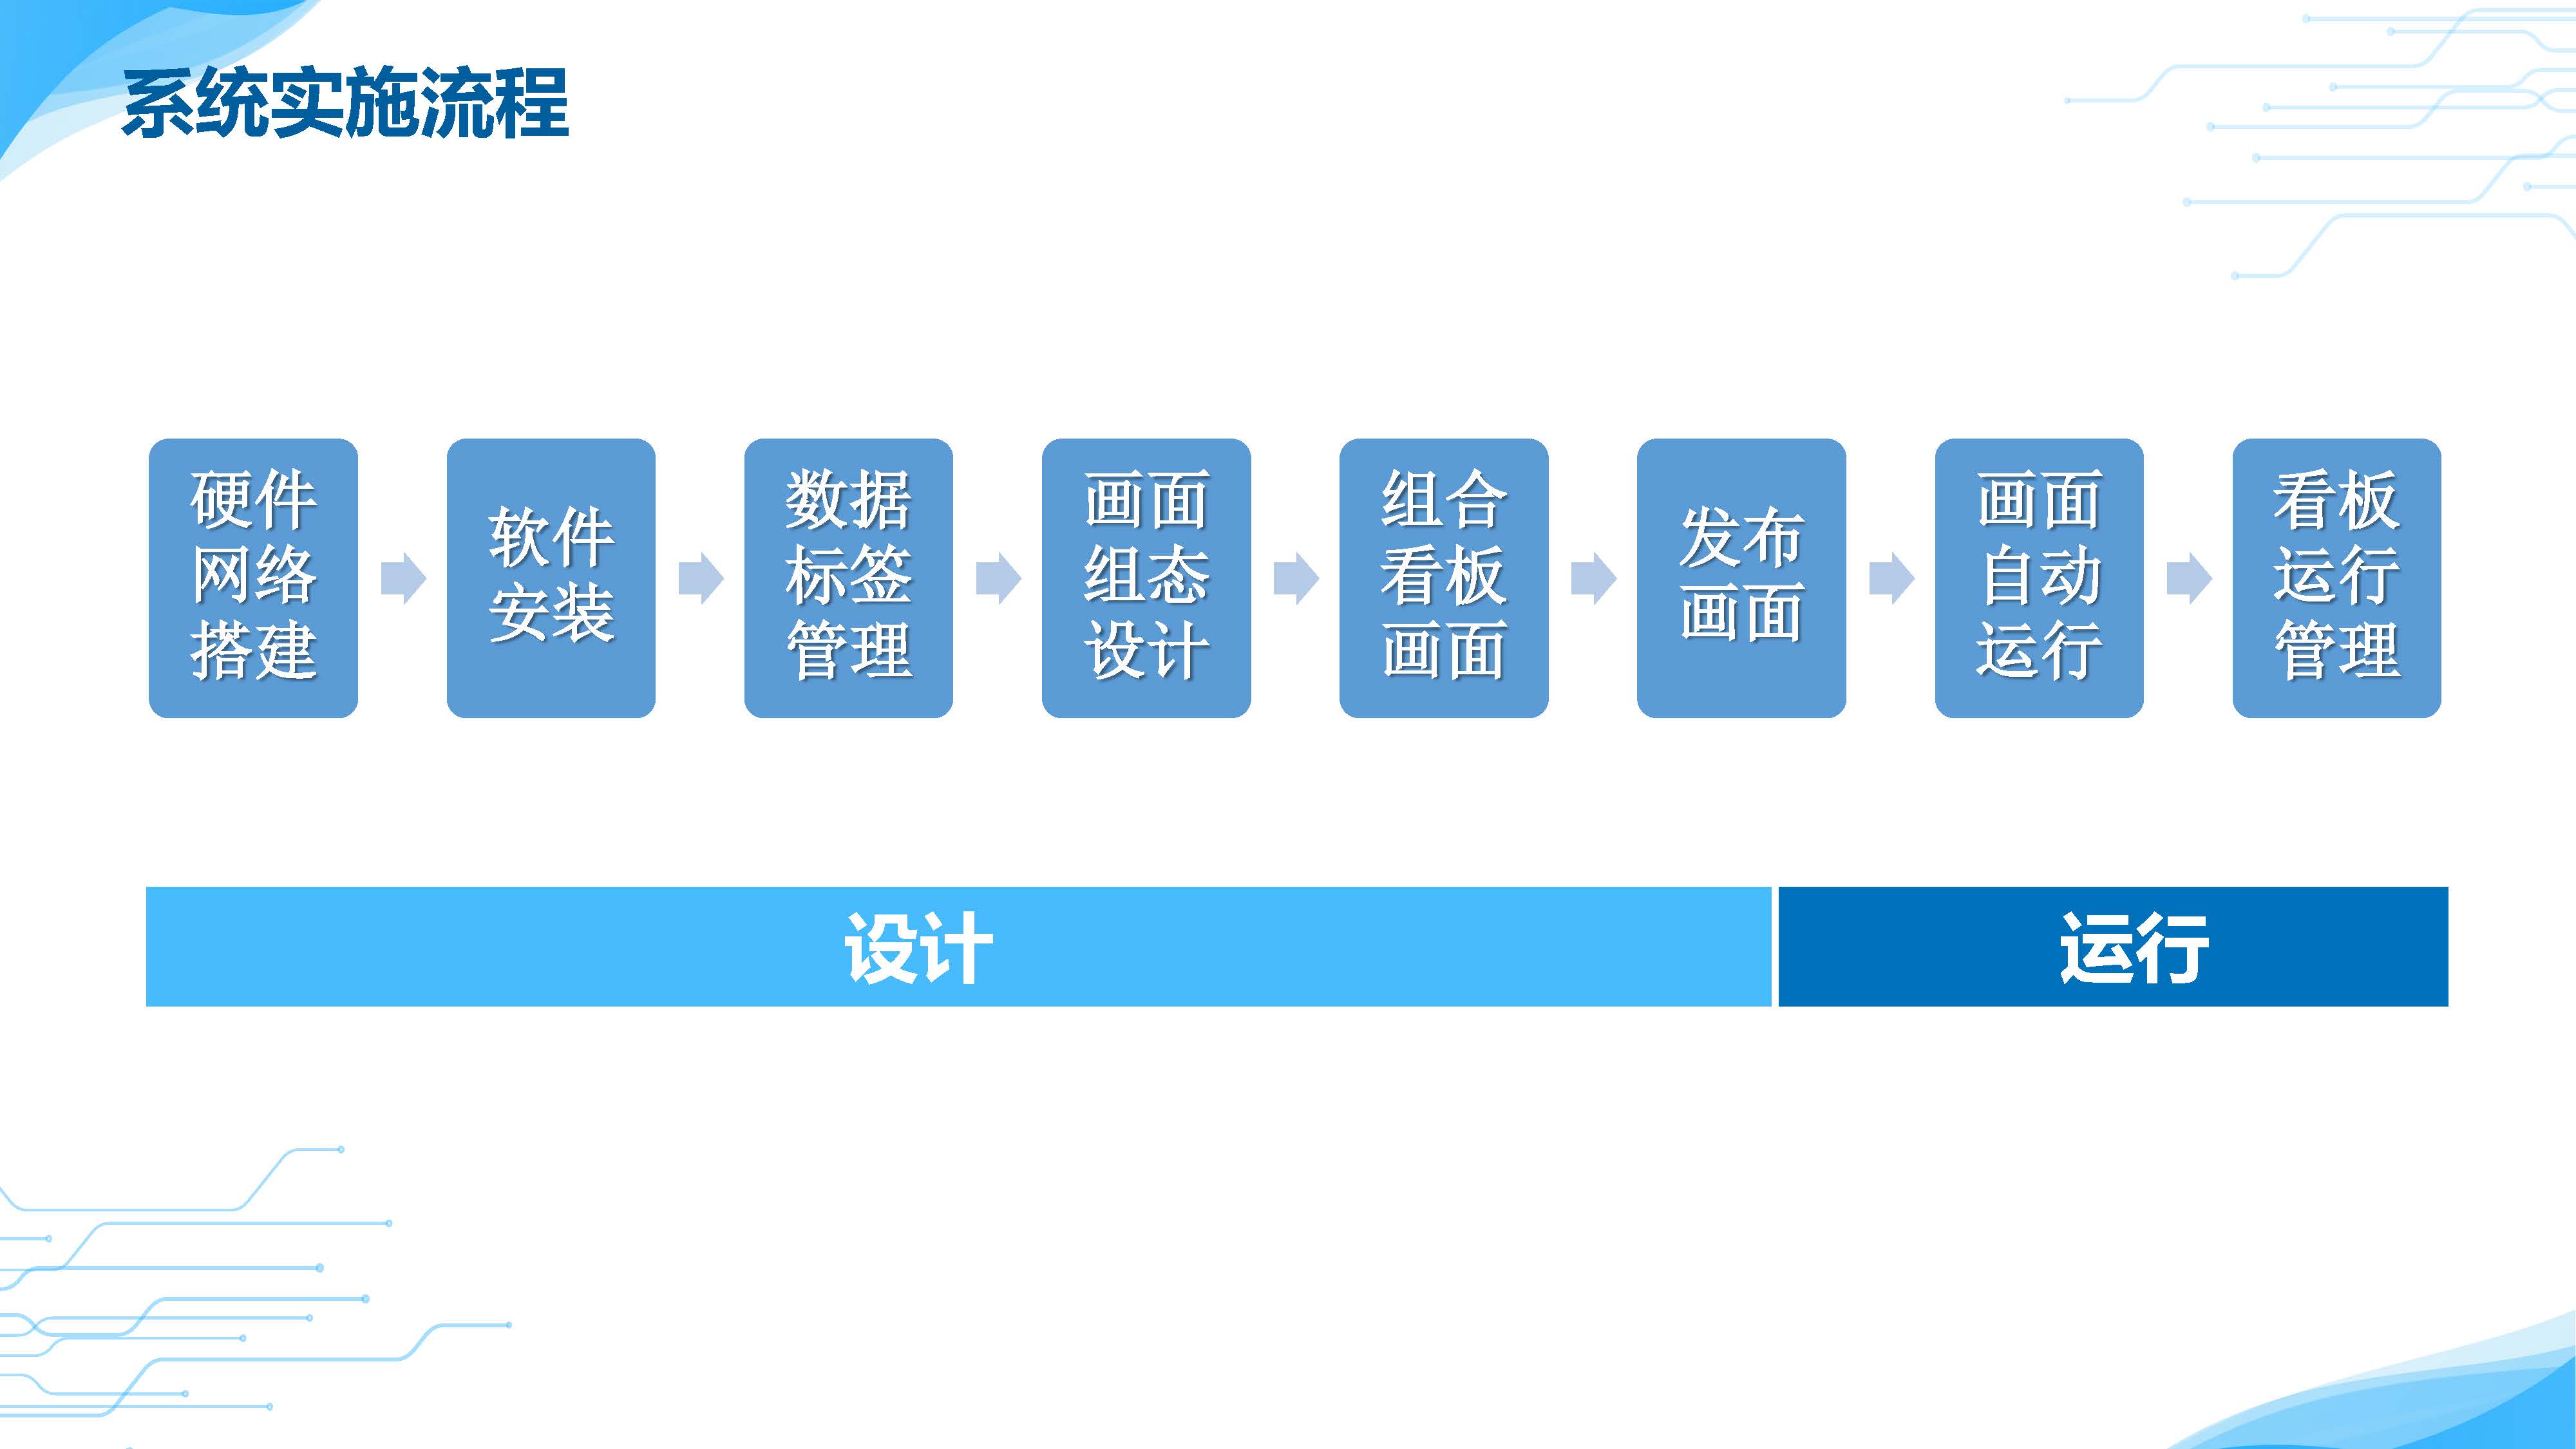 组态看板系统产品介绍(图6)